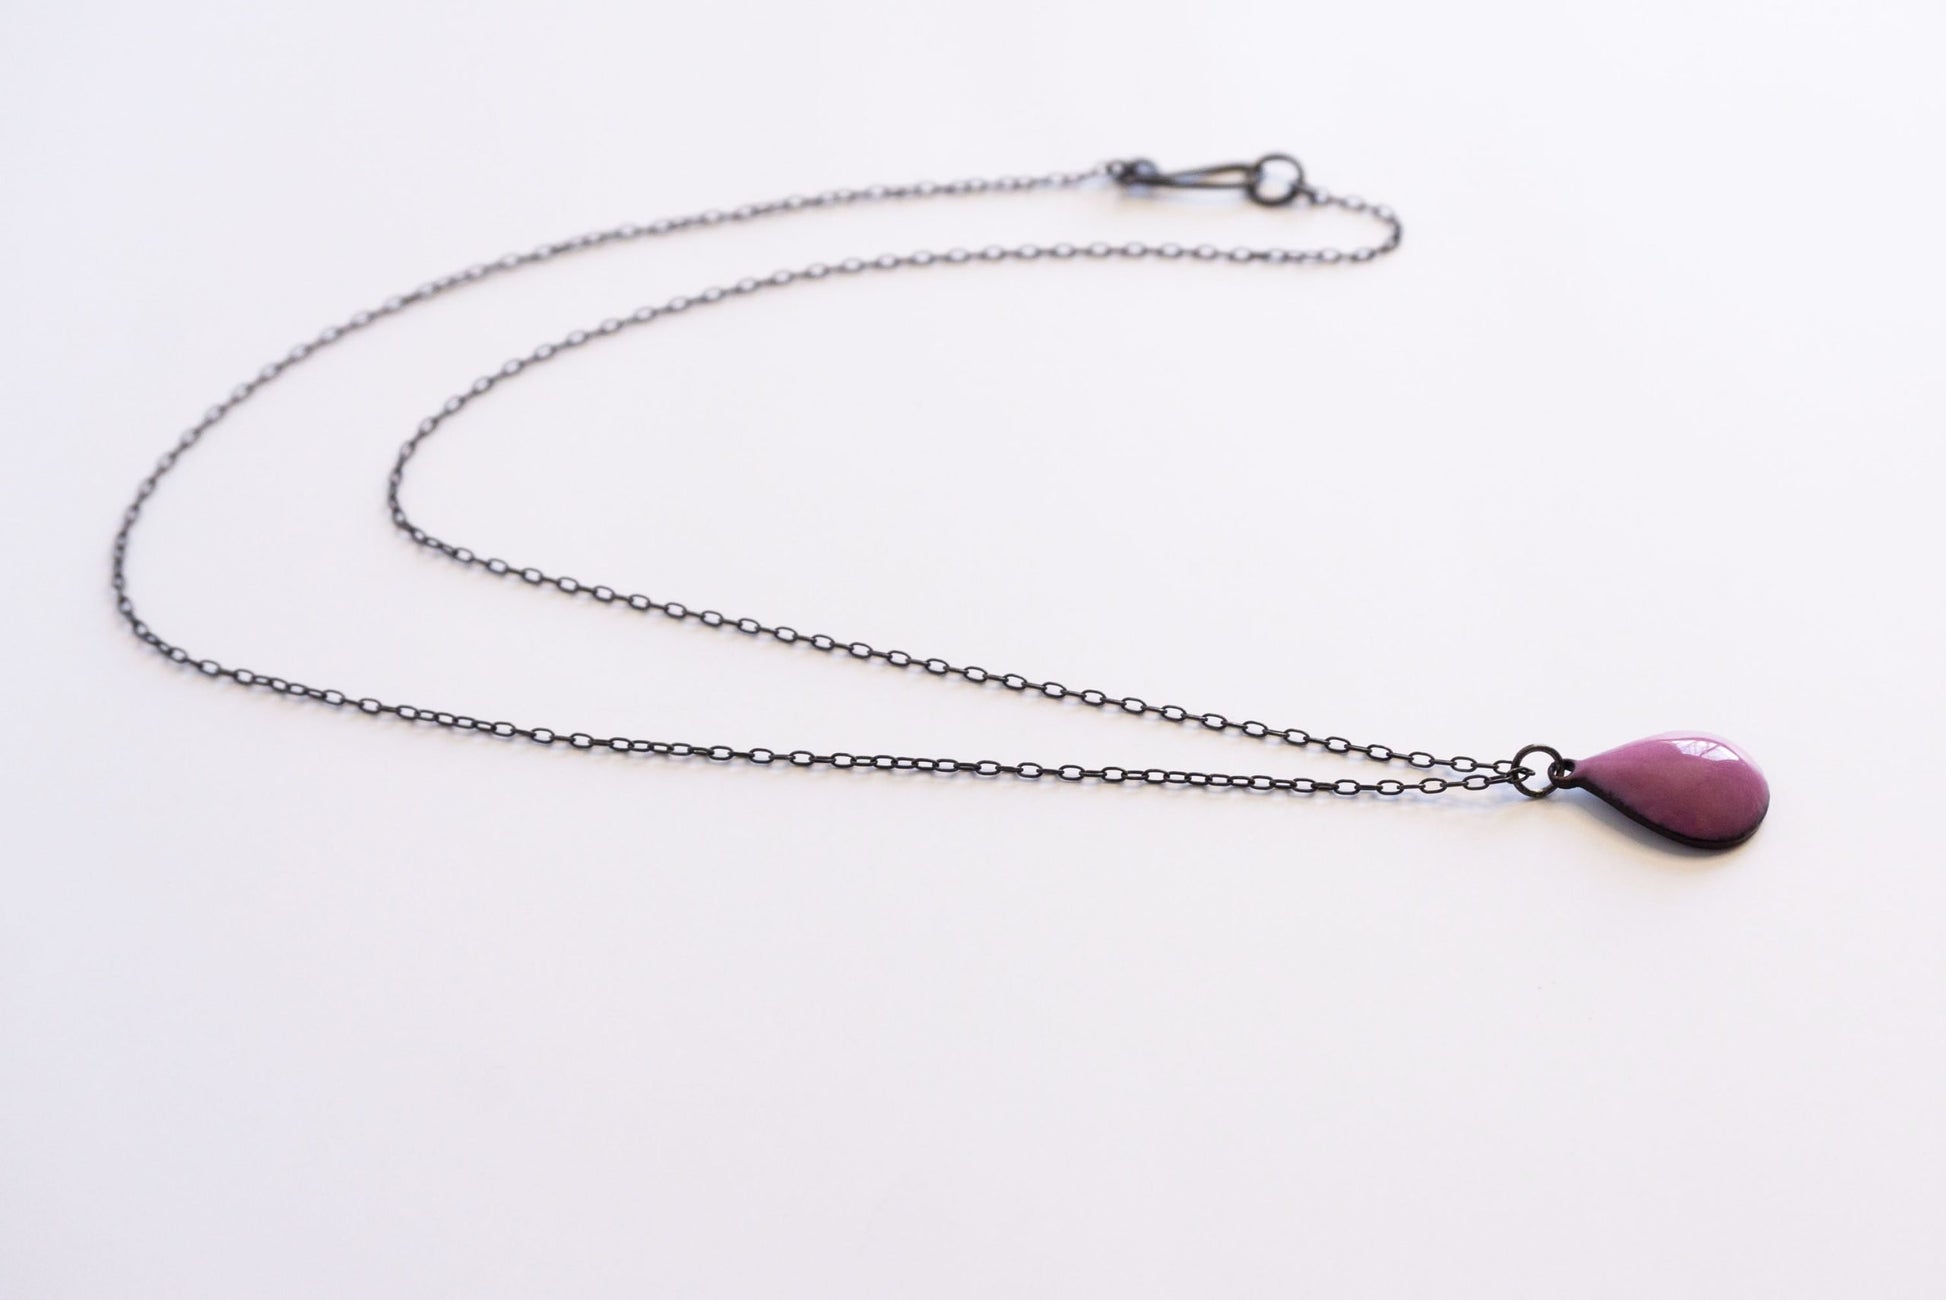 Lavender oxidized silver drop pendant necklace